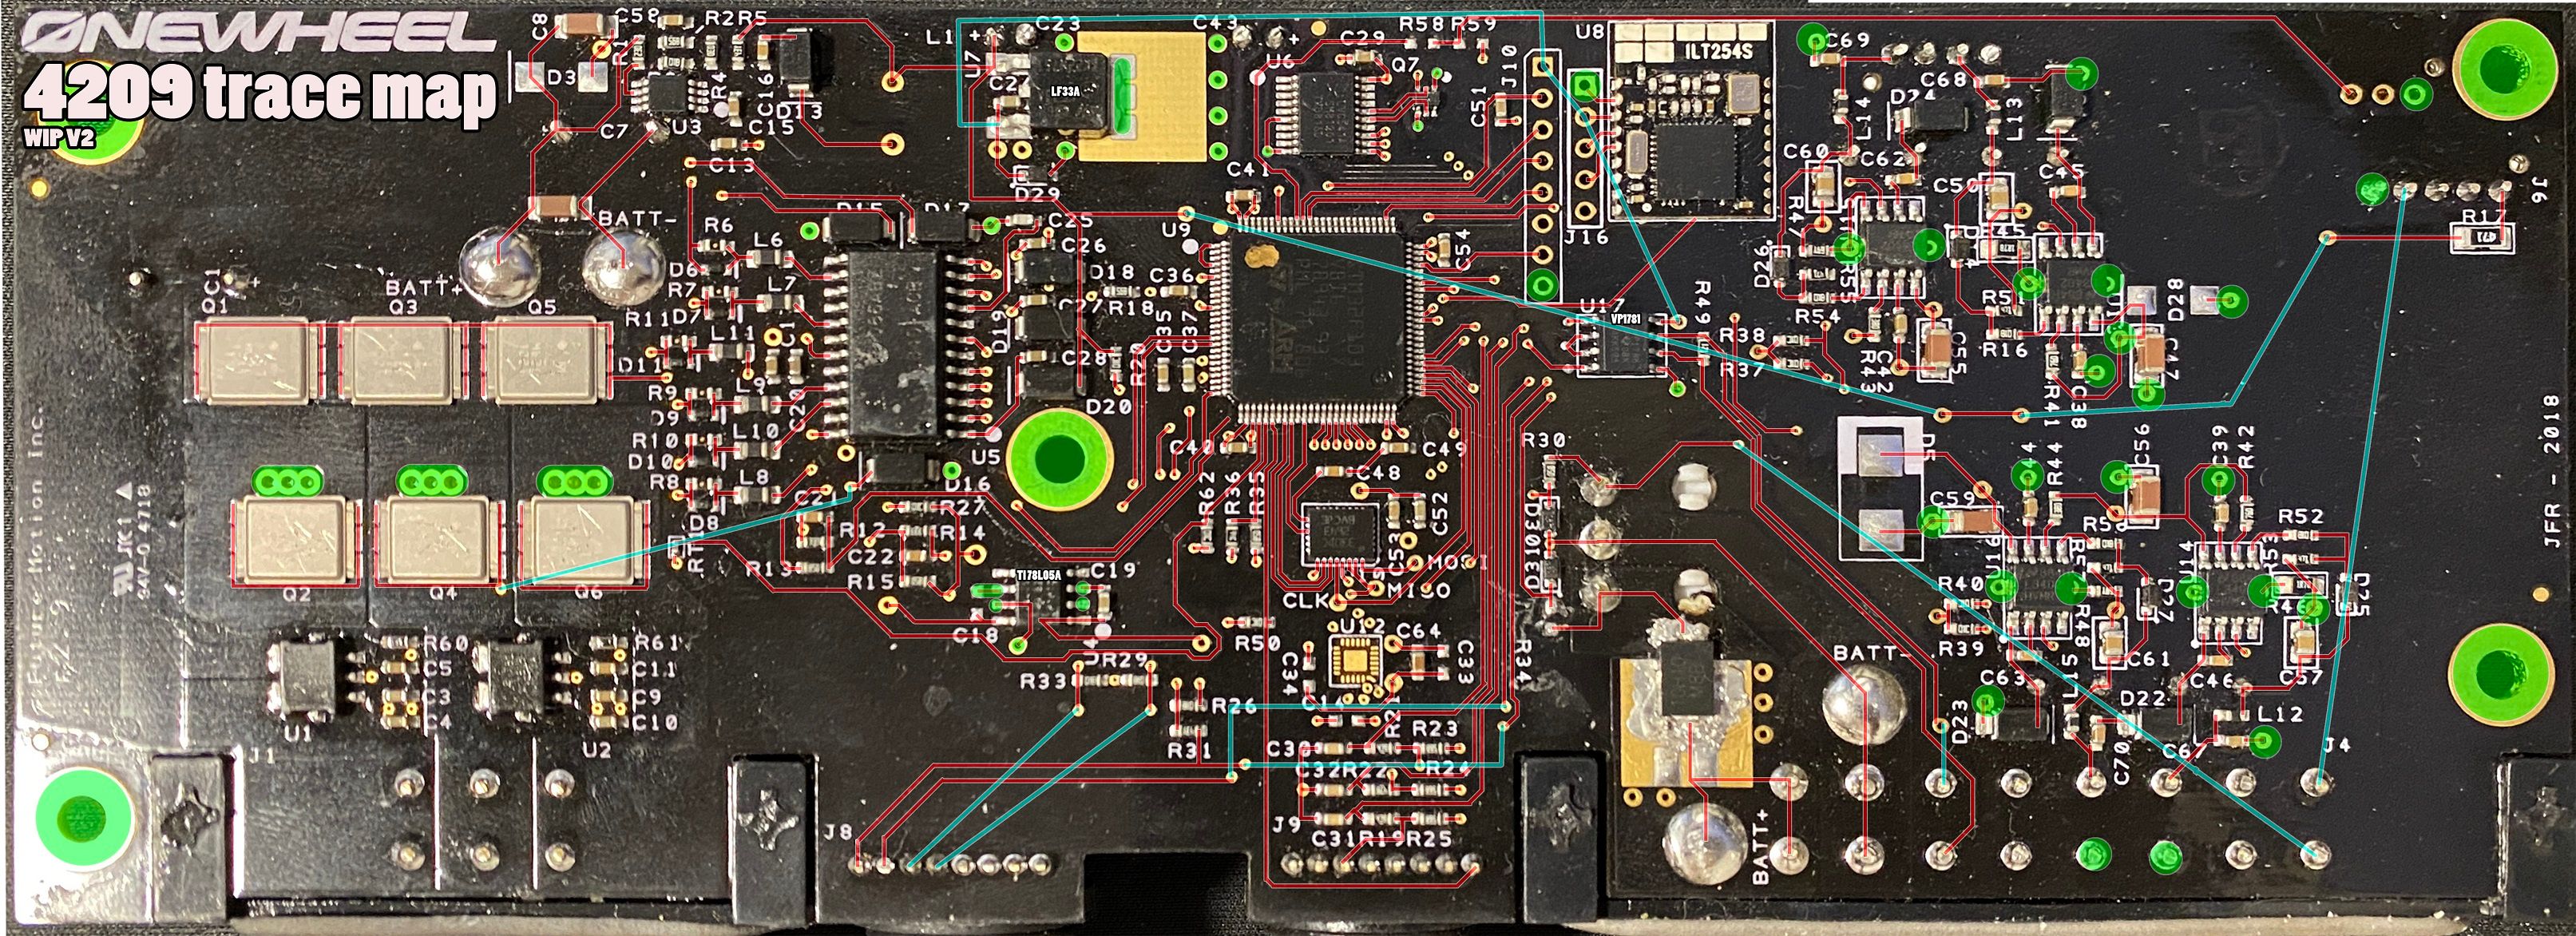 XR 4209 PCB Traces (V2) small.jpg